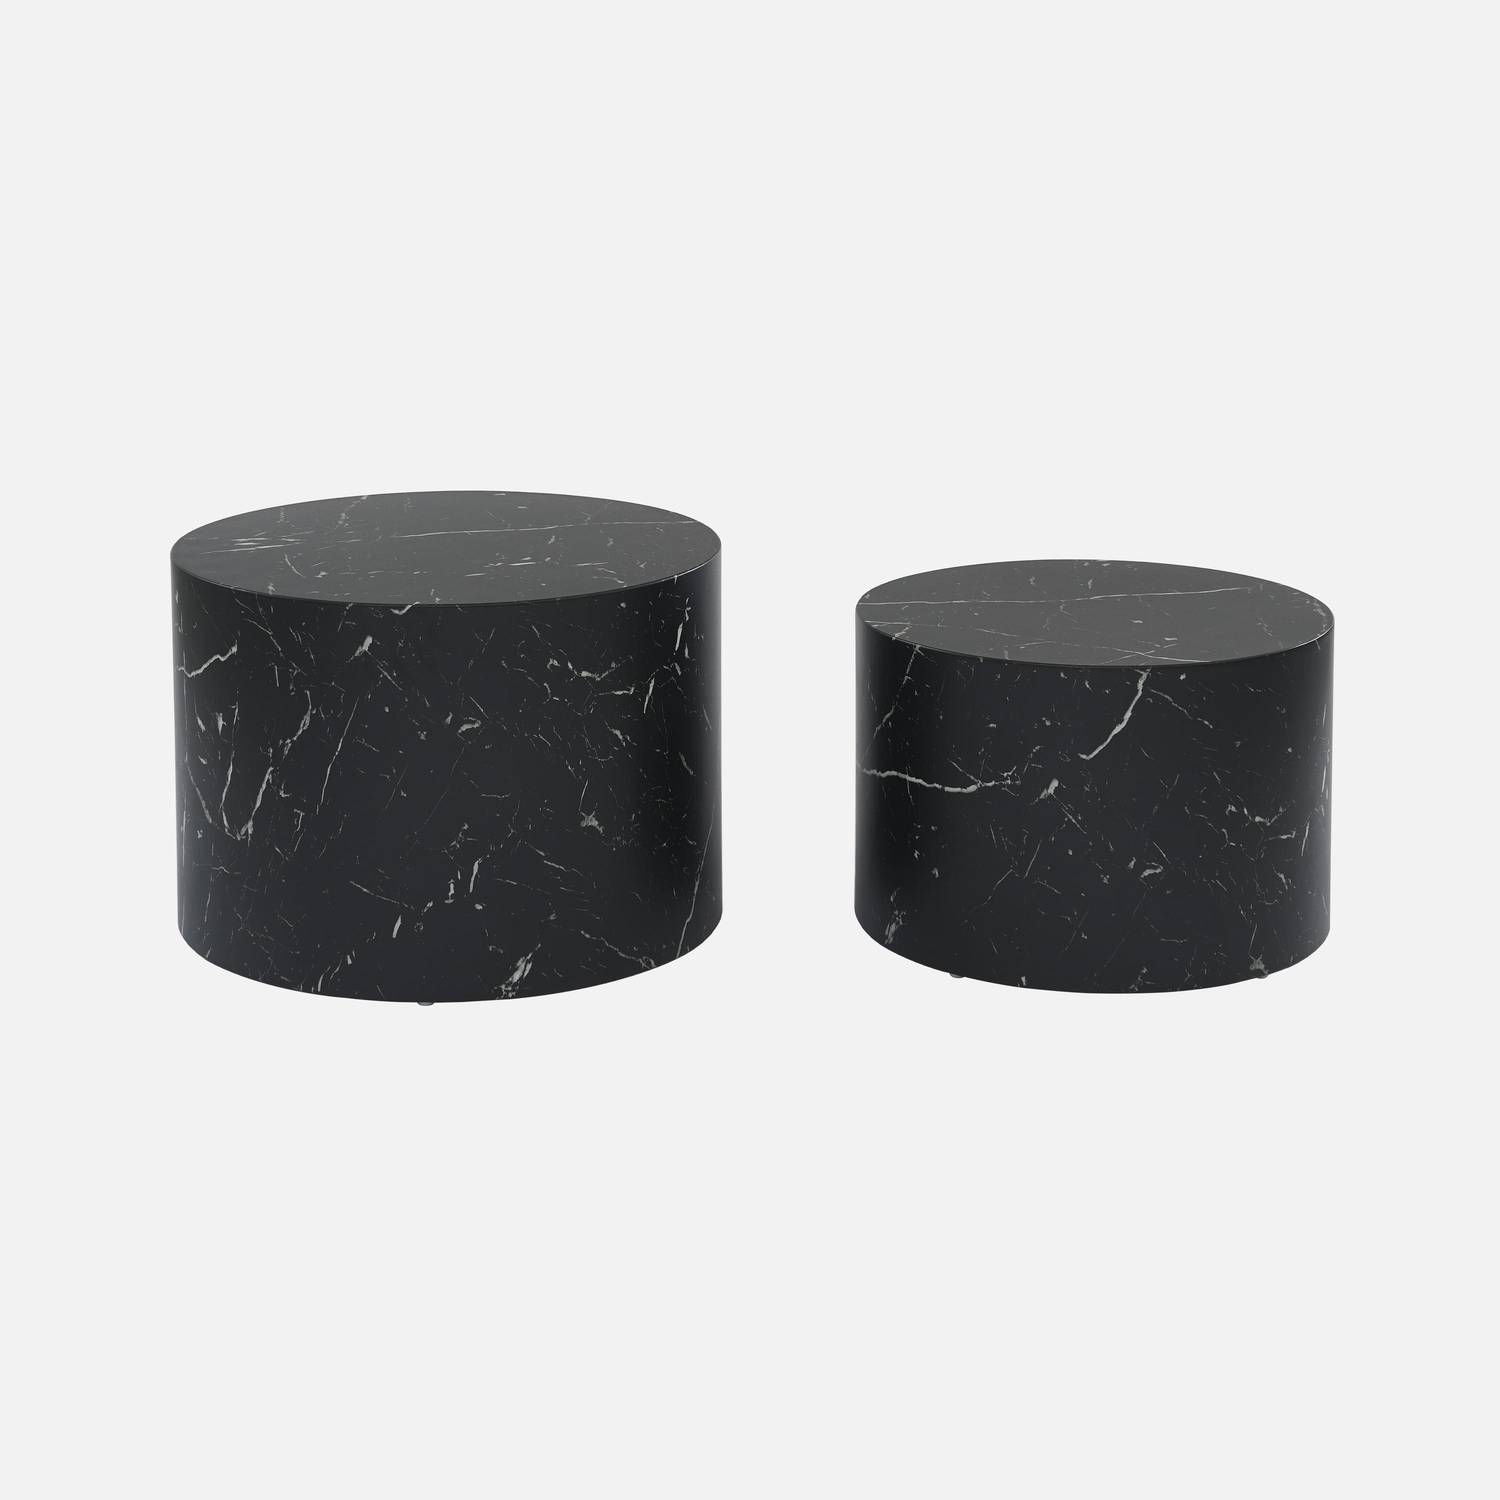 Lote de 2 mesas de centro redondas PAROS, efecto mármol negro, mesas nido Ø58 x H 40cm / Ø50 x H 33cm Photo4